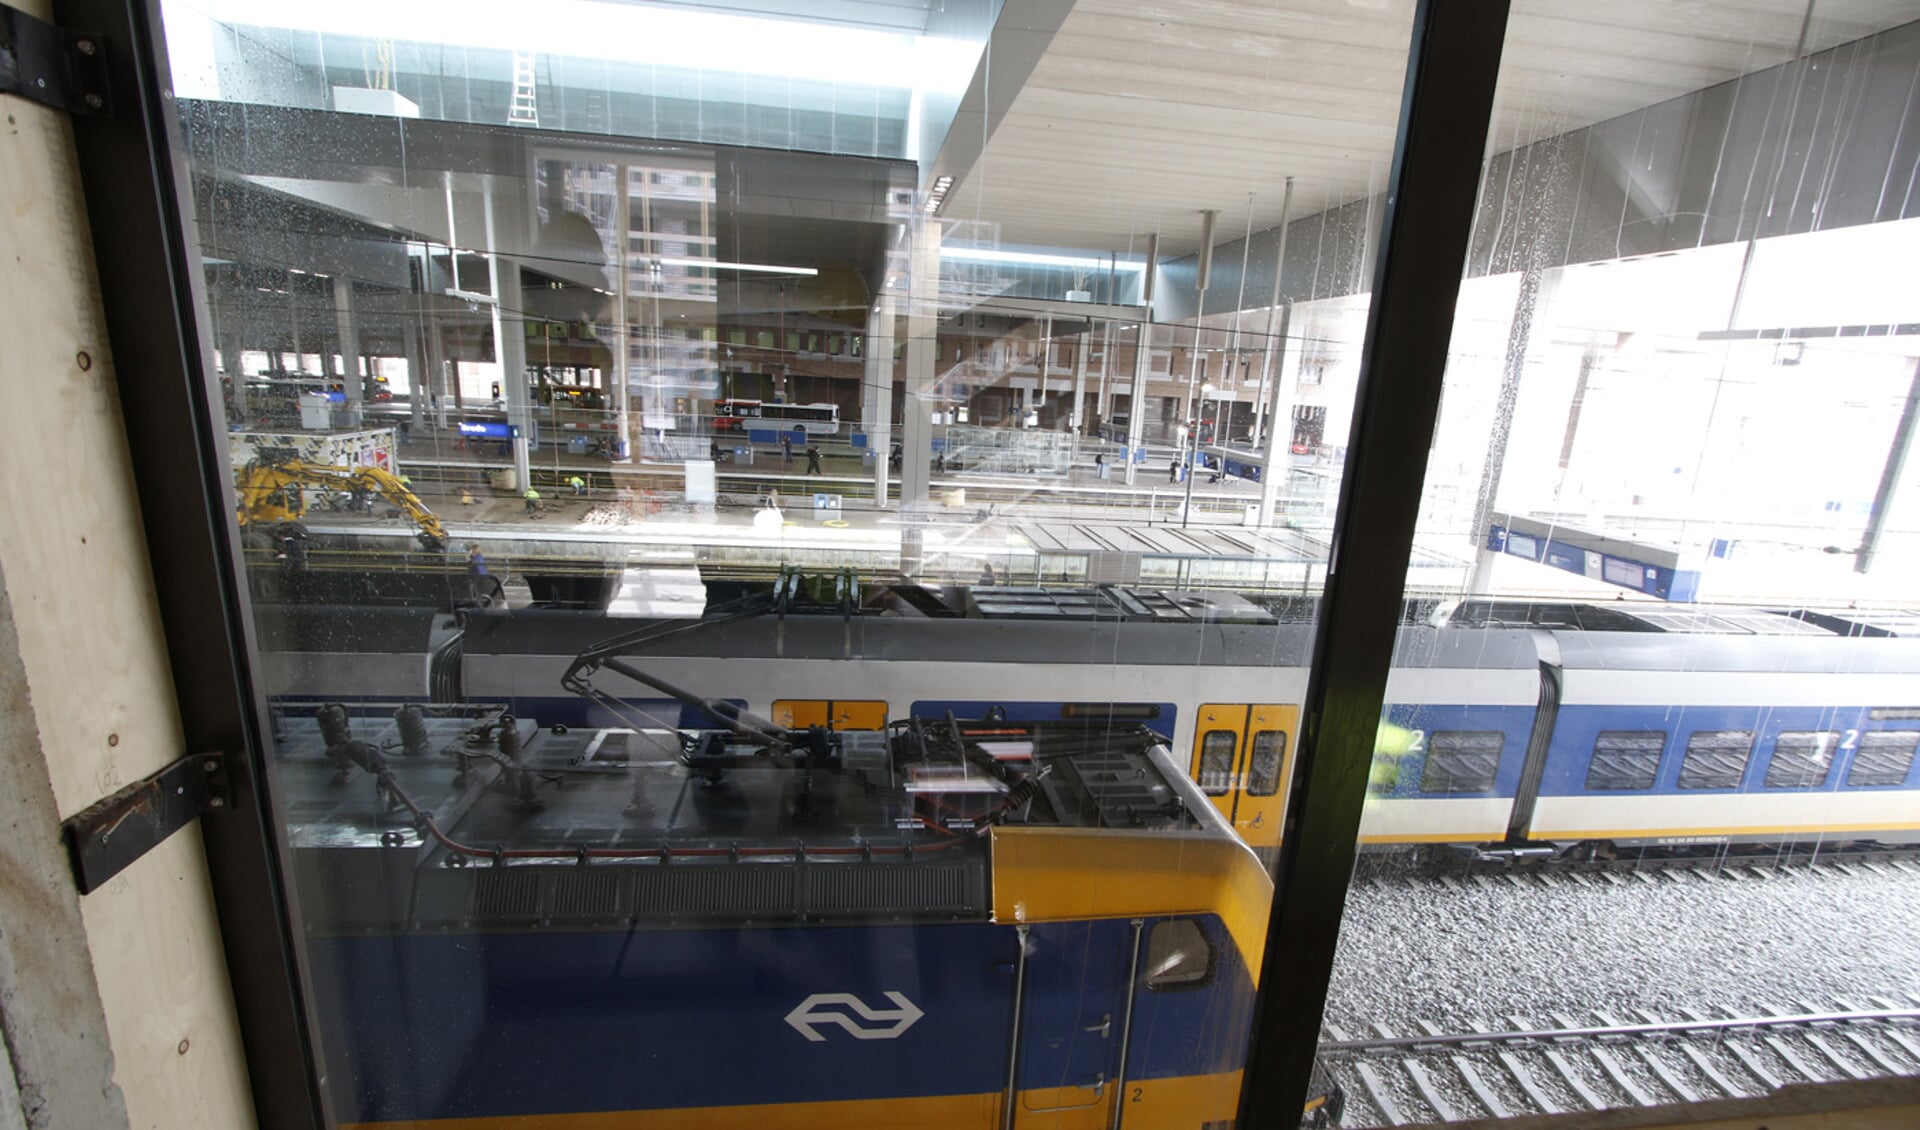 Station Breda, 13 april 2016. Een kleine vijf maanden voor de officiële opening.